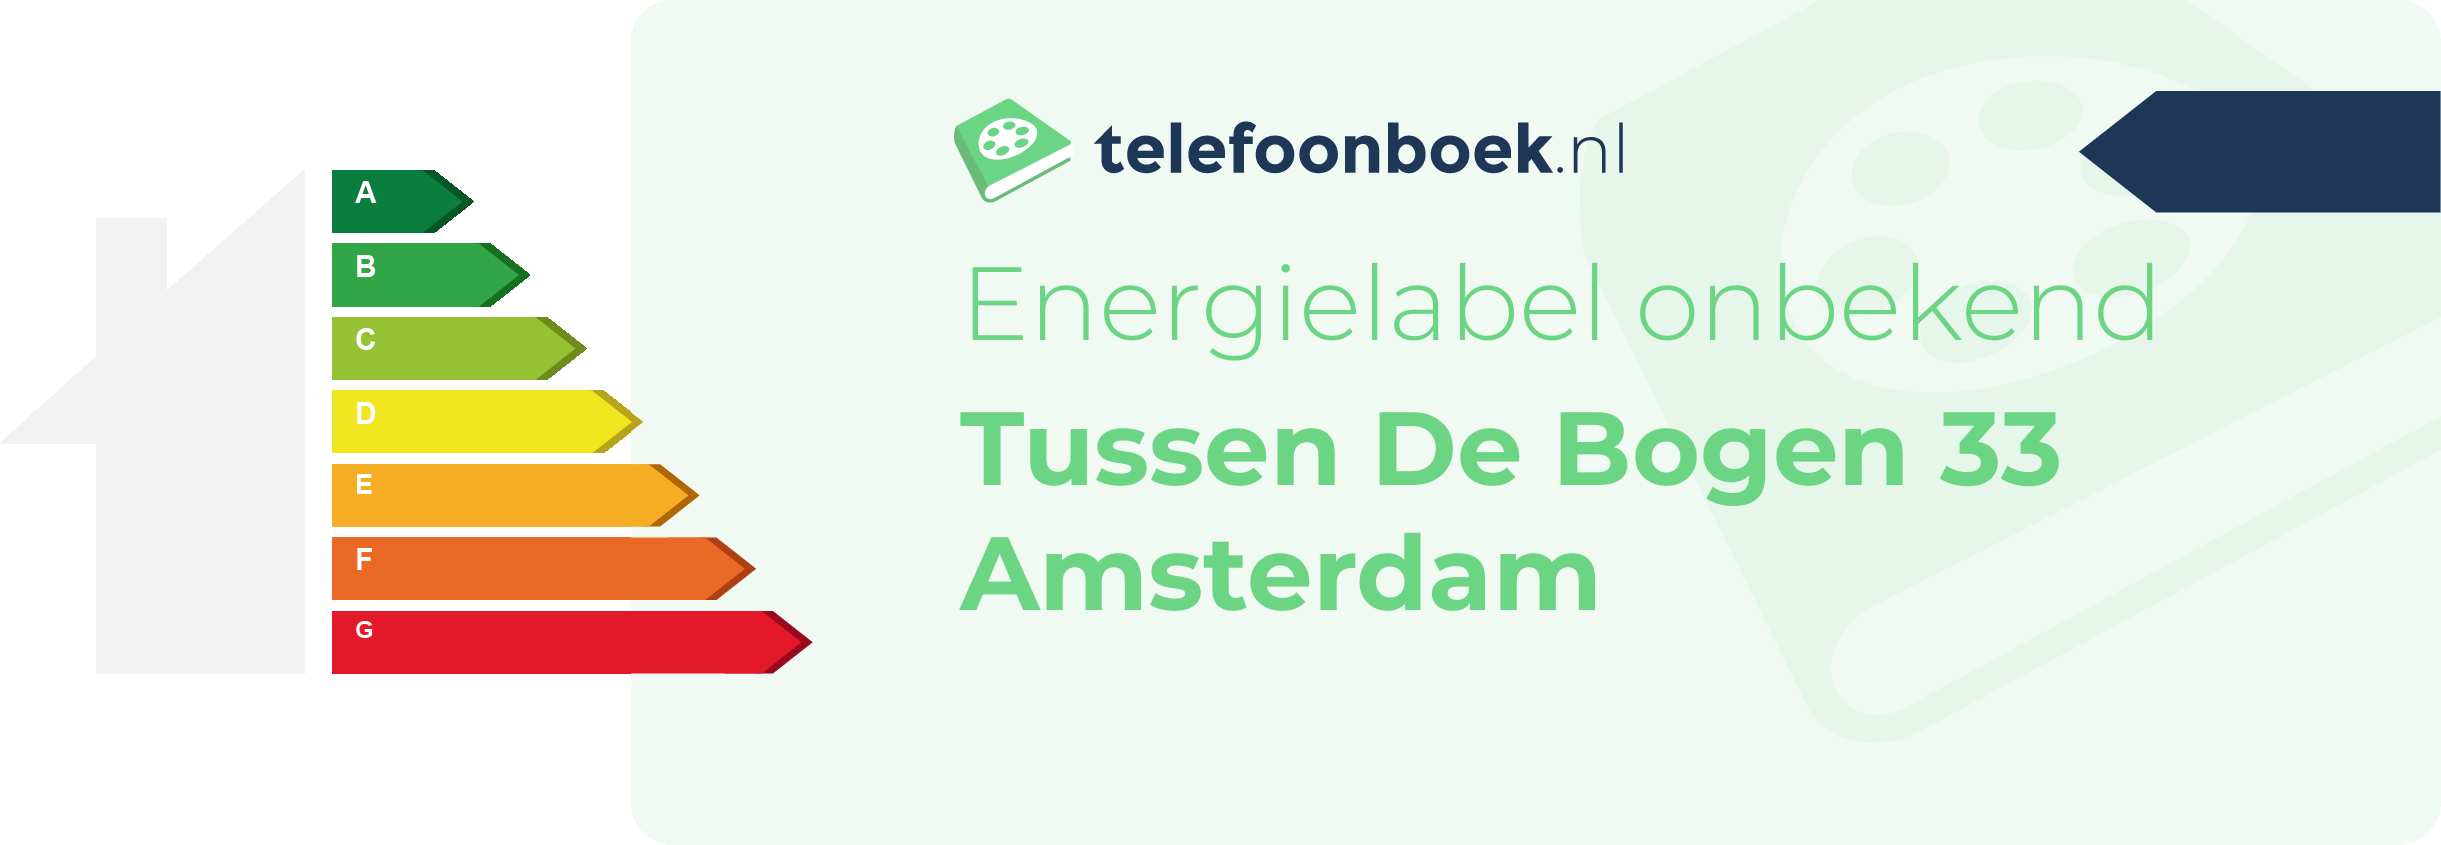 Energielabel Tussen De Bogen 33 Amsterdam